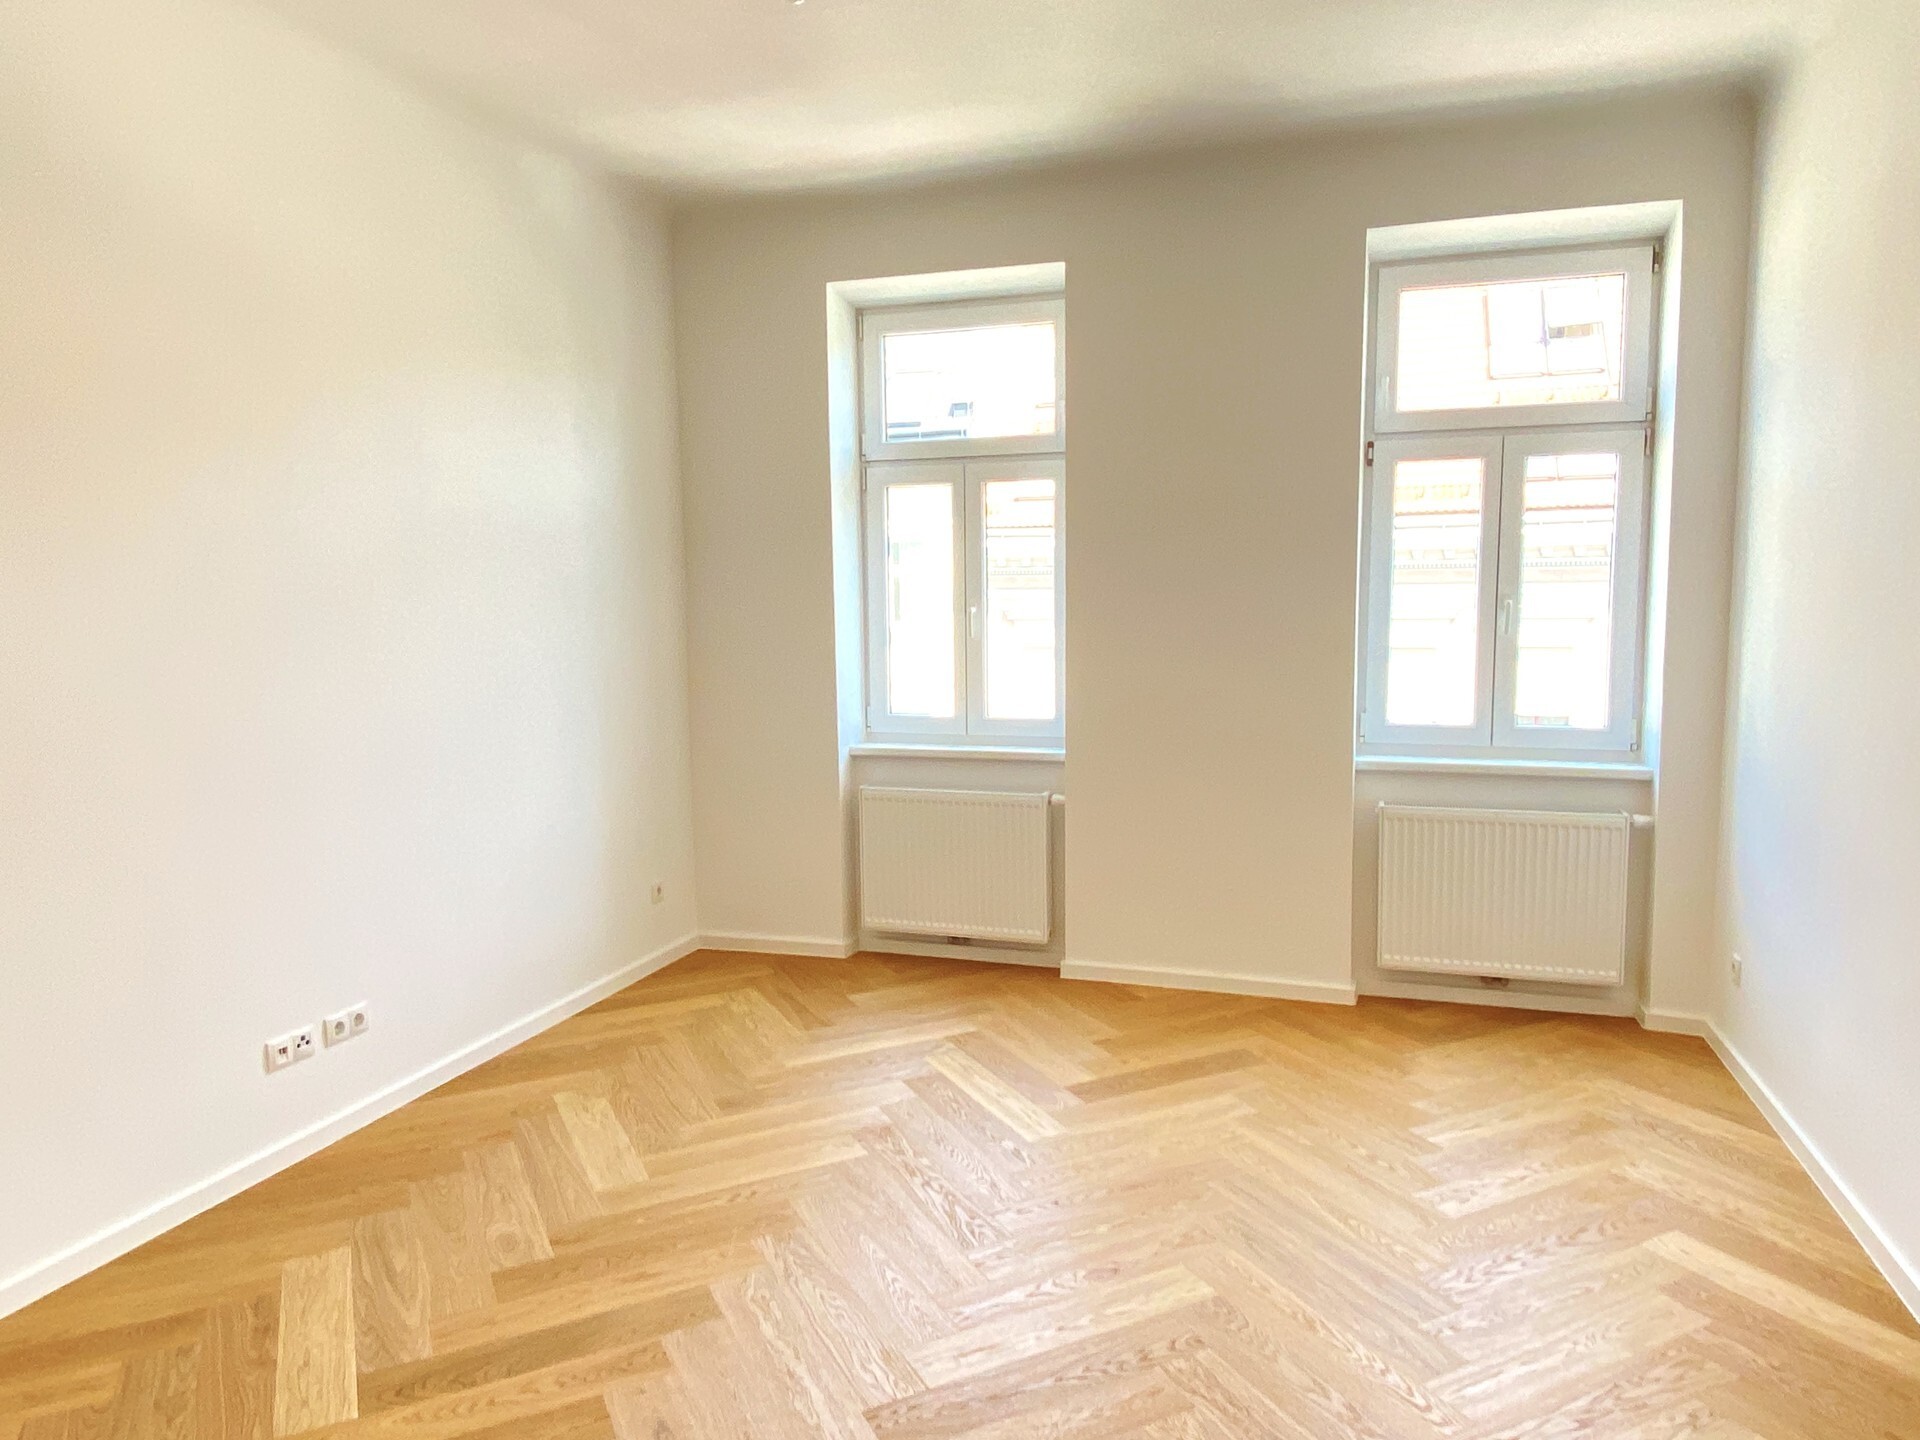 Helle stillvoll renovierte 2-Zimmer Altbauwohnung mit neuer Küche und Bad - zu kaufen in 1150 Wien